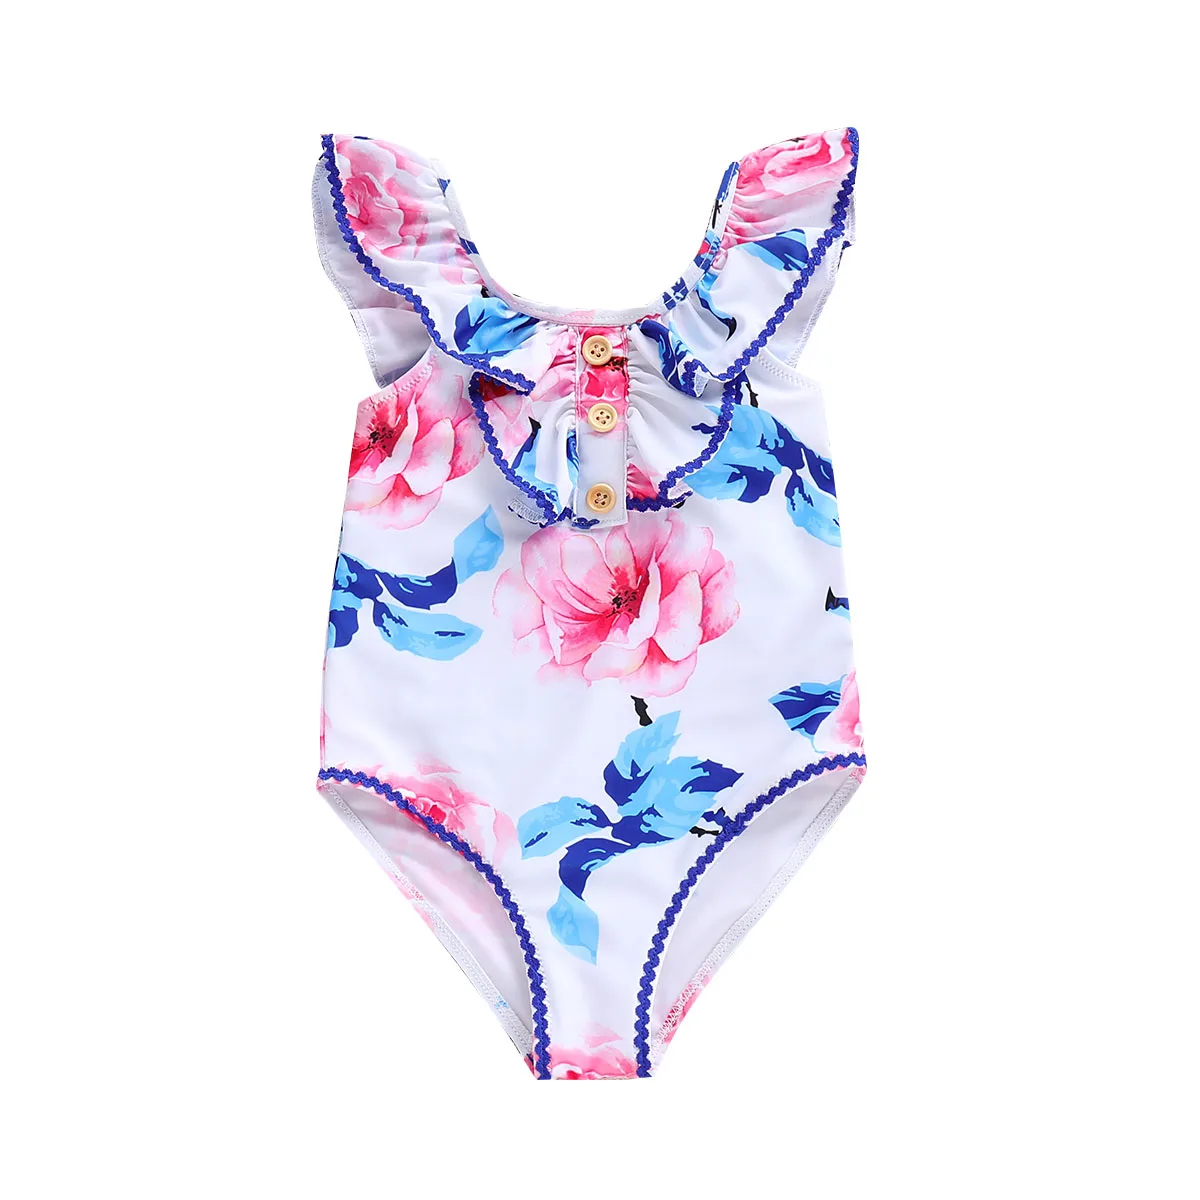 Pudcoco 2019 новый бренд модная детская одежда для девочек купальник, бикини юбка ванный комплект 12-5Y